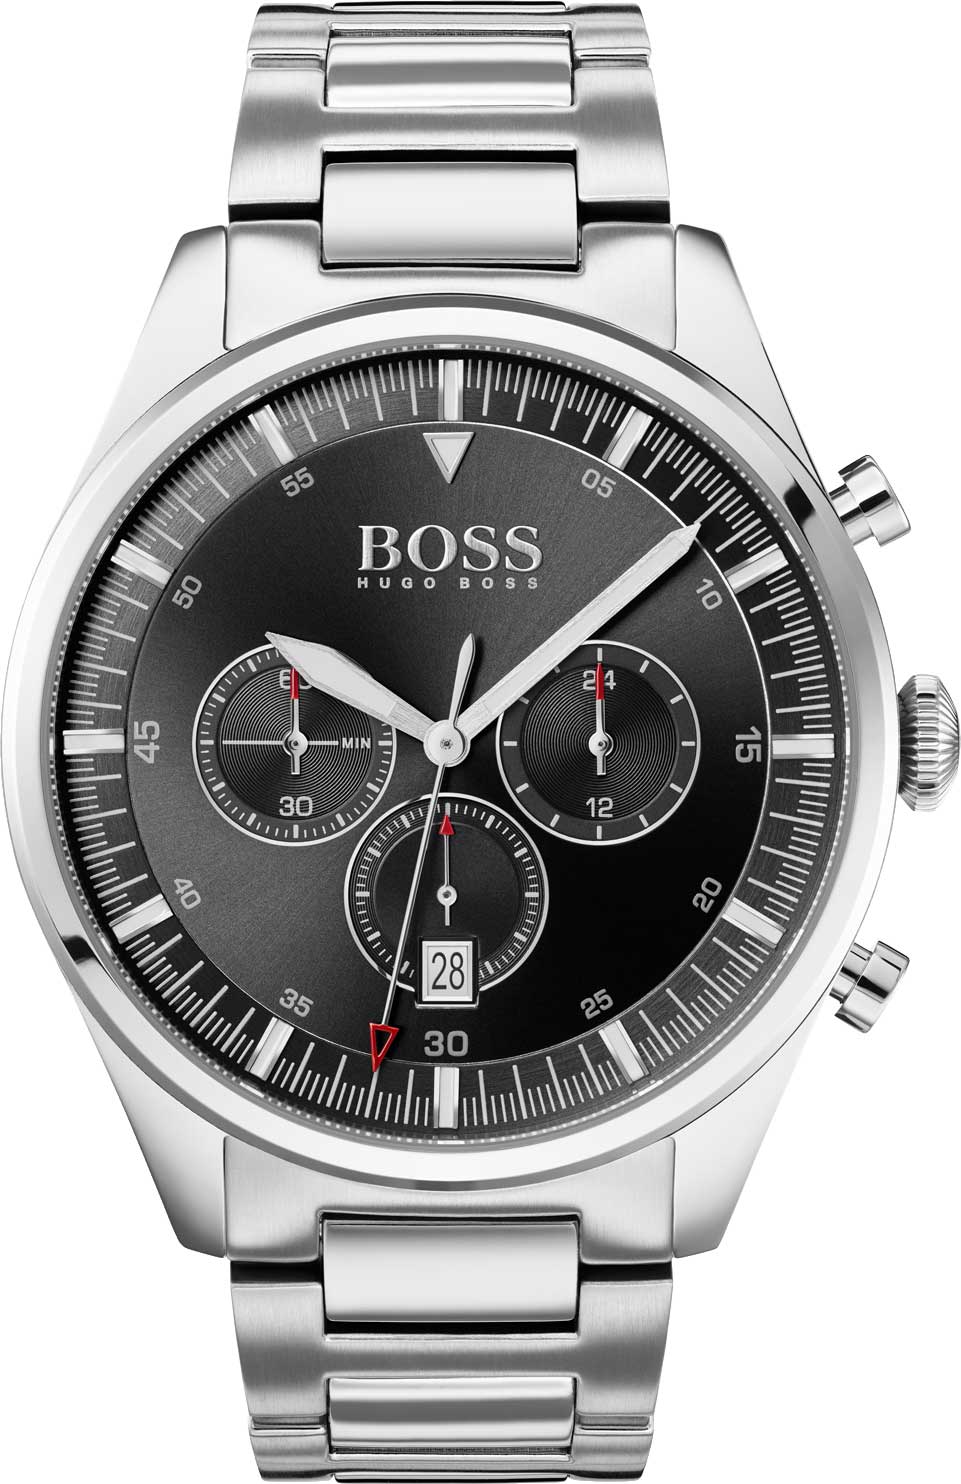   Hugo Boss HB1513712  